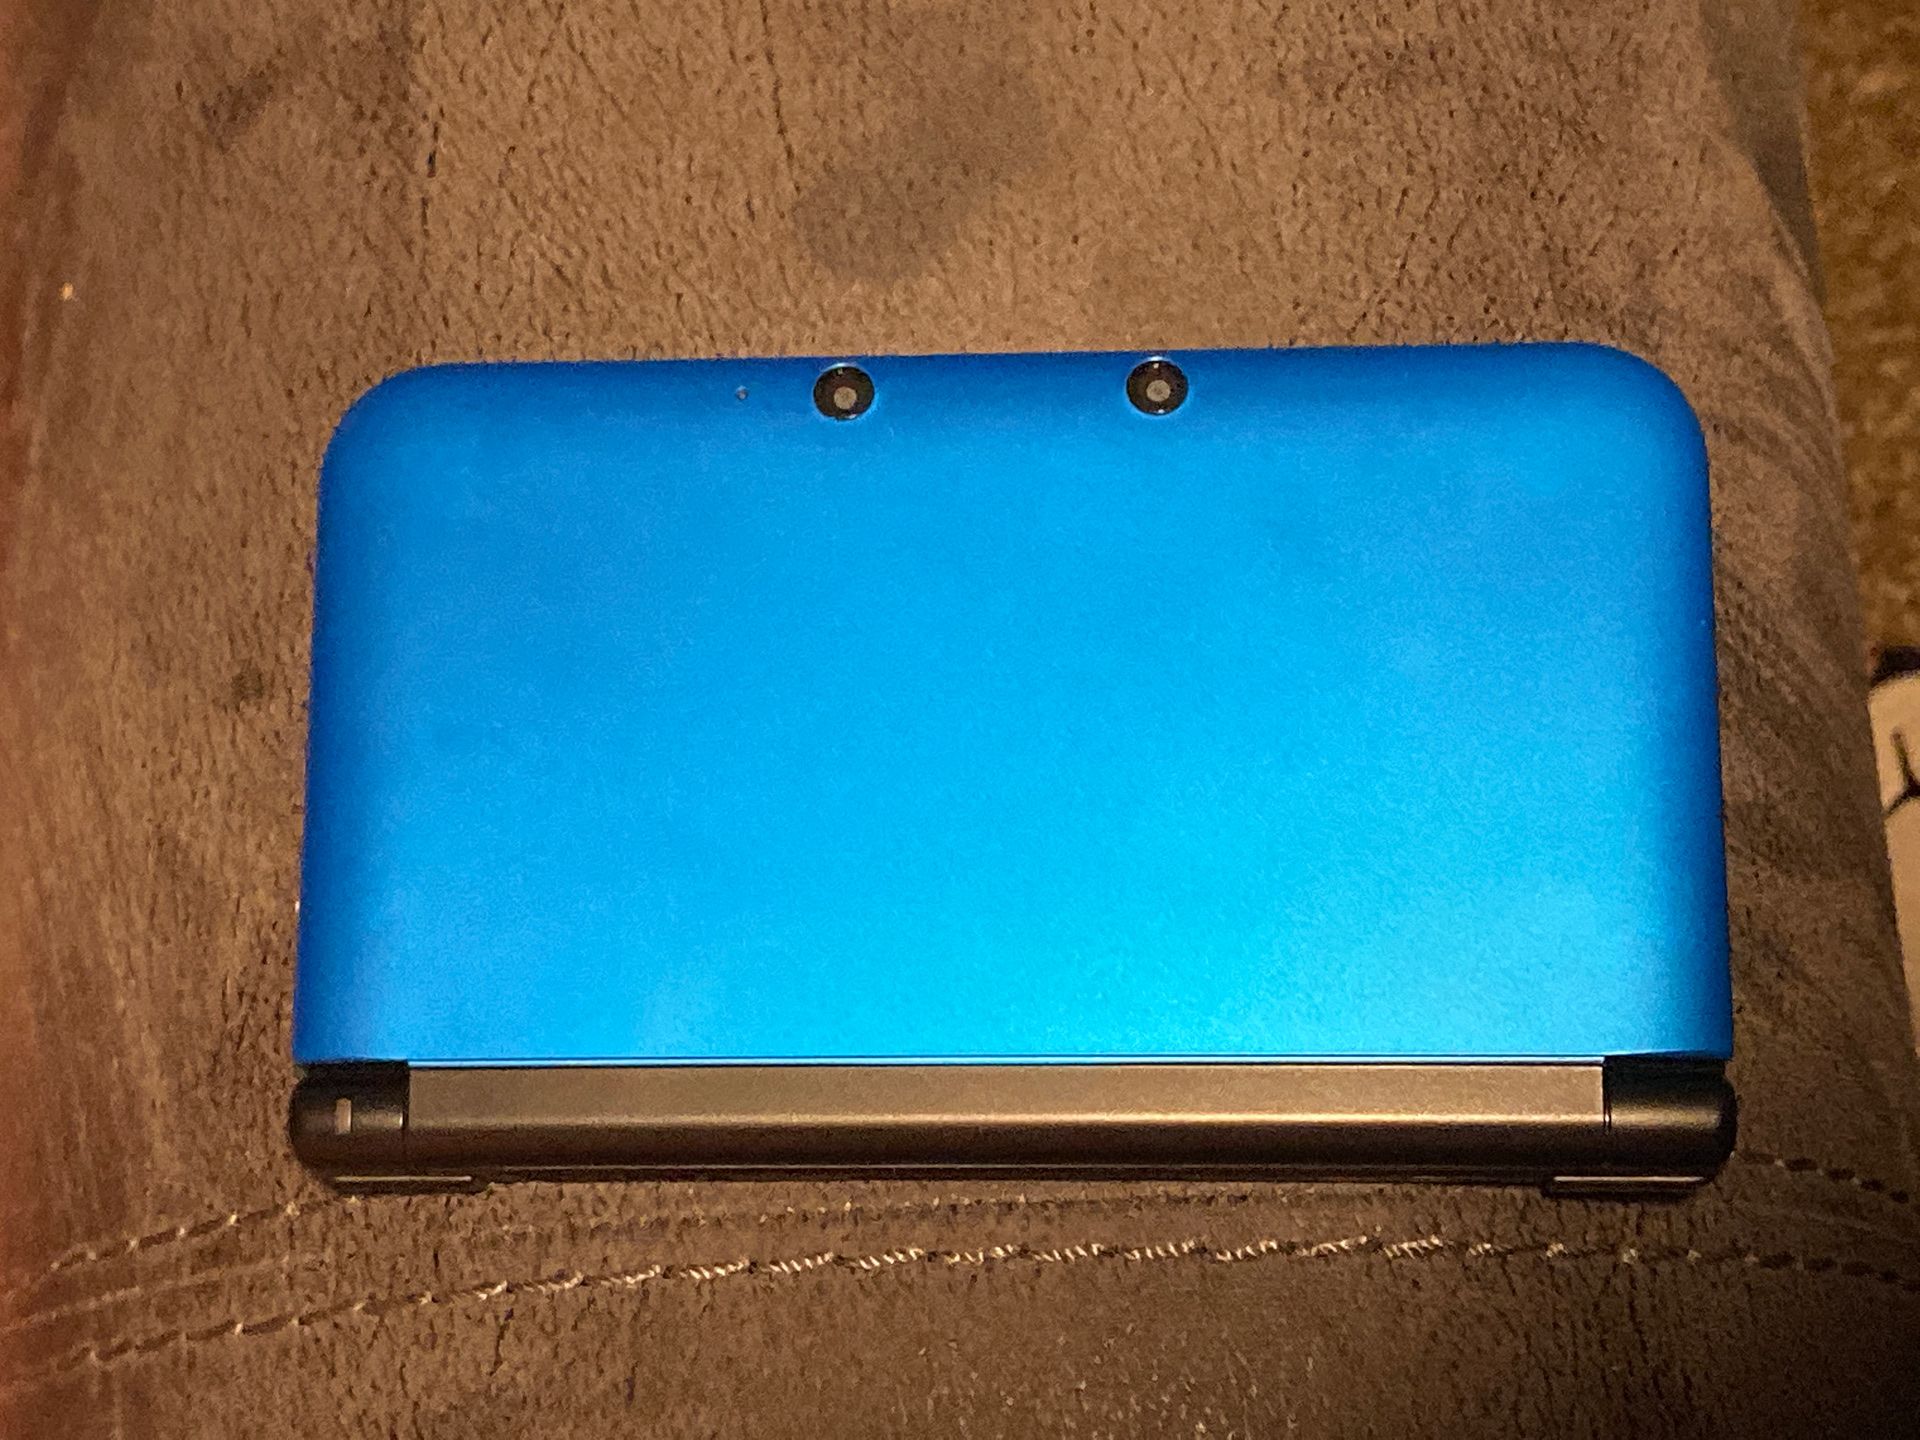 Nintendo 3DS Xl Color Blue no charger or pen